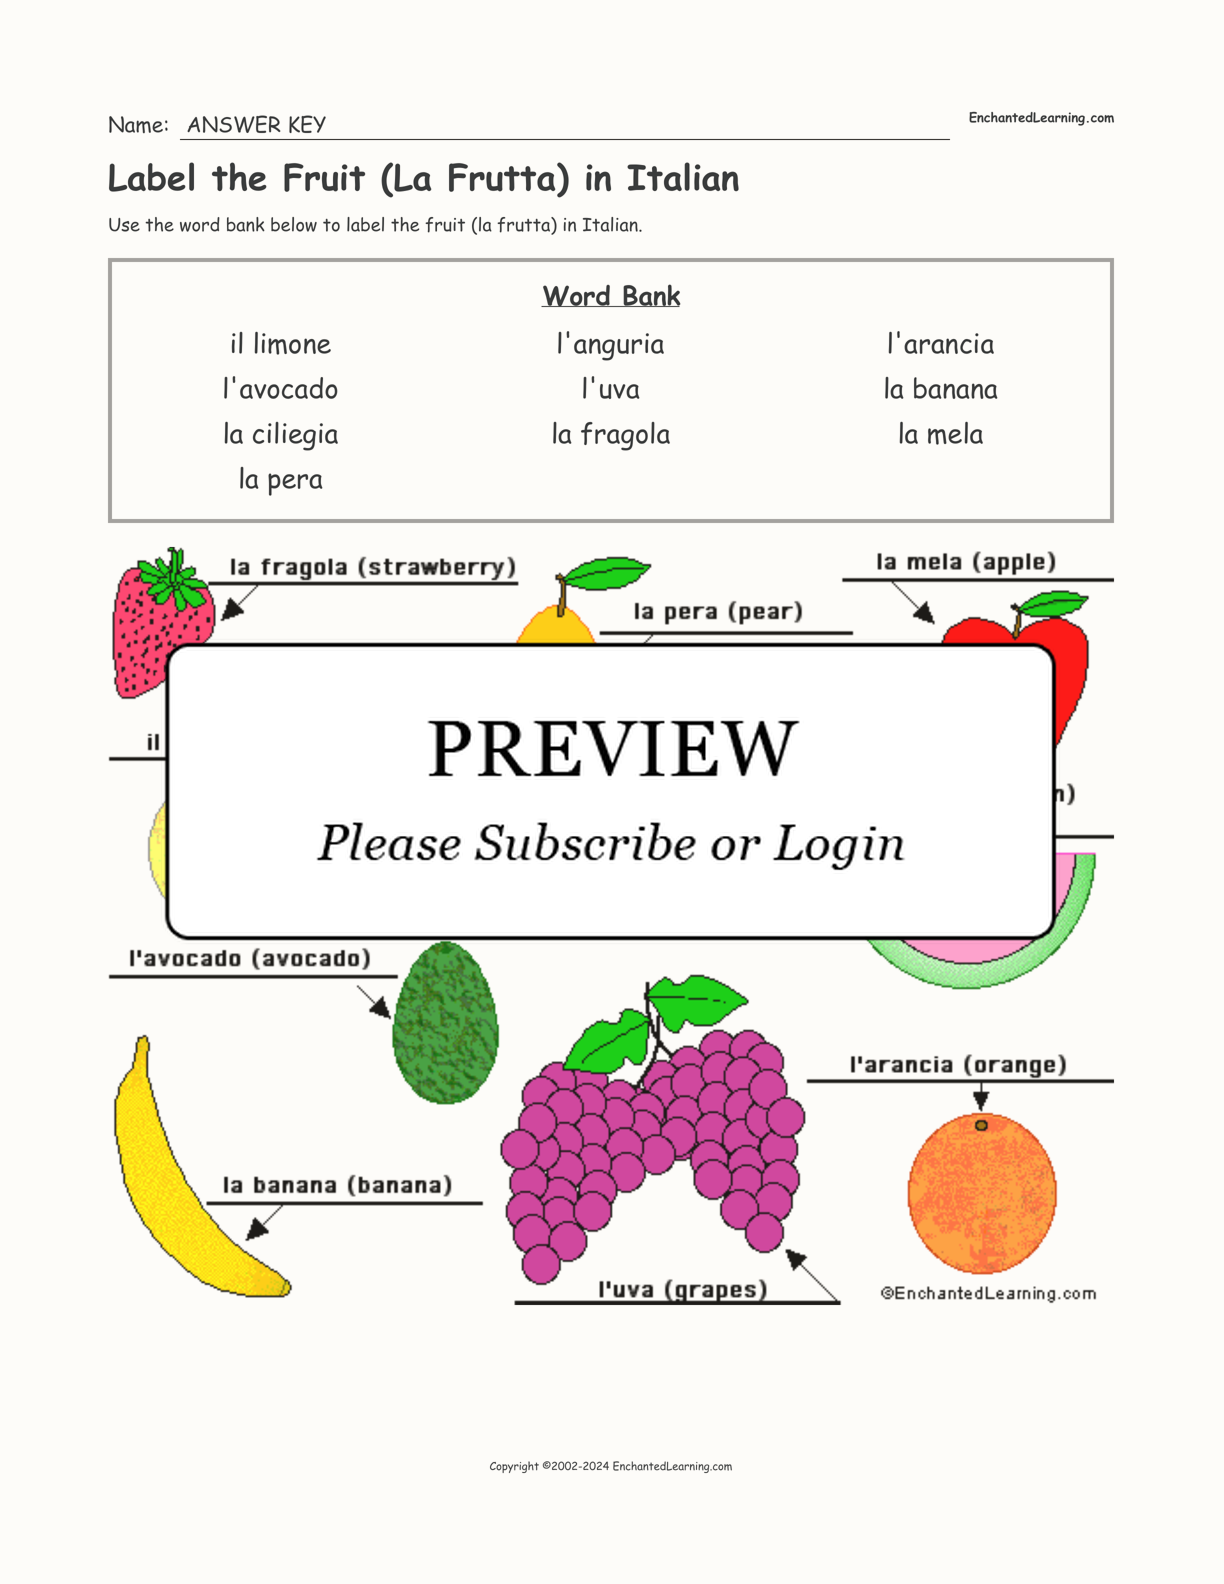 Label the Fruit (La Frutta) in Italian interactive worksheet page 2